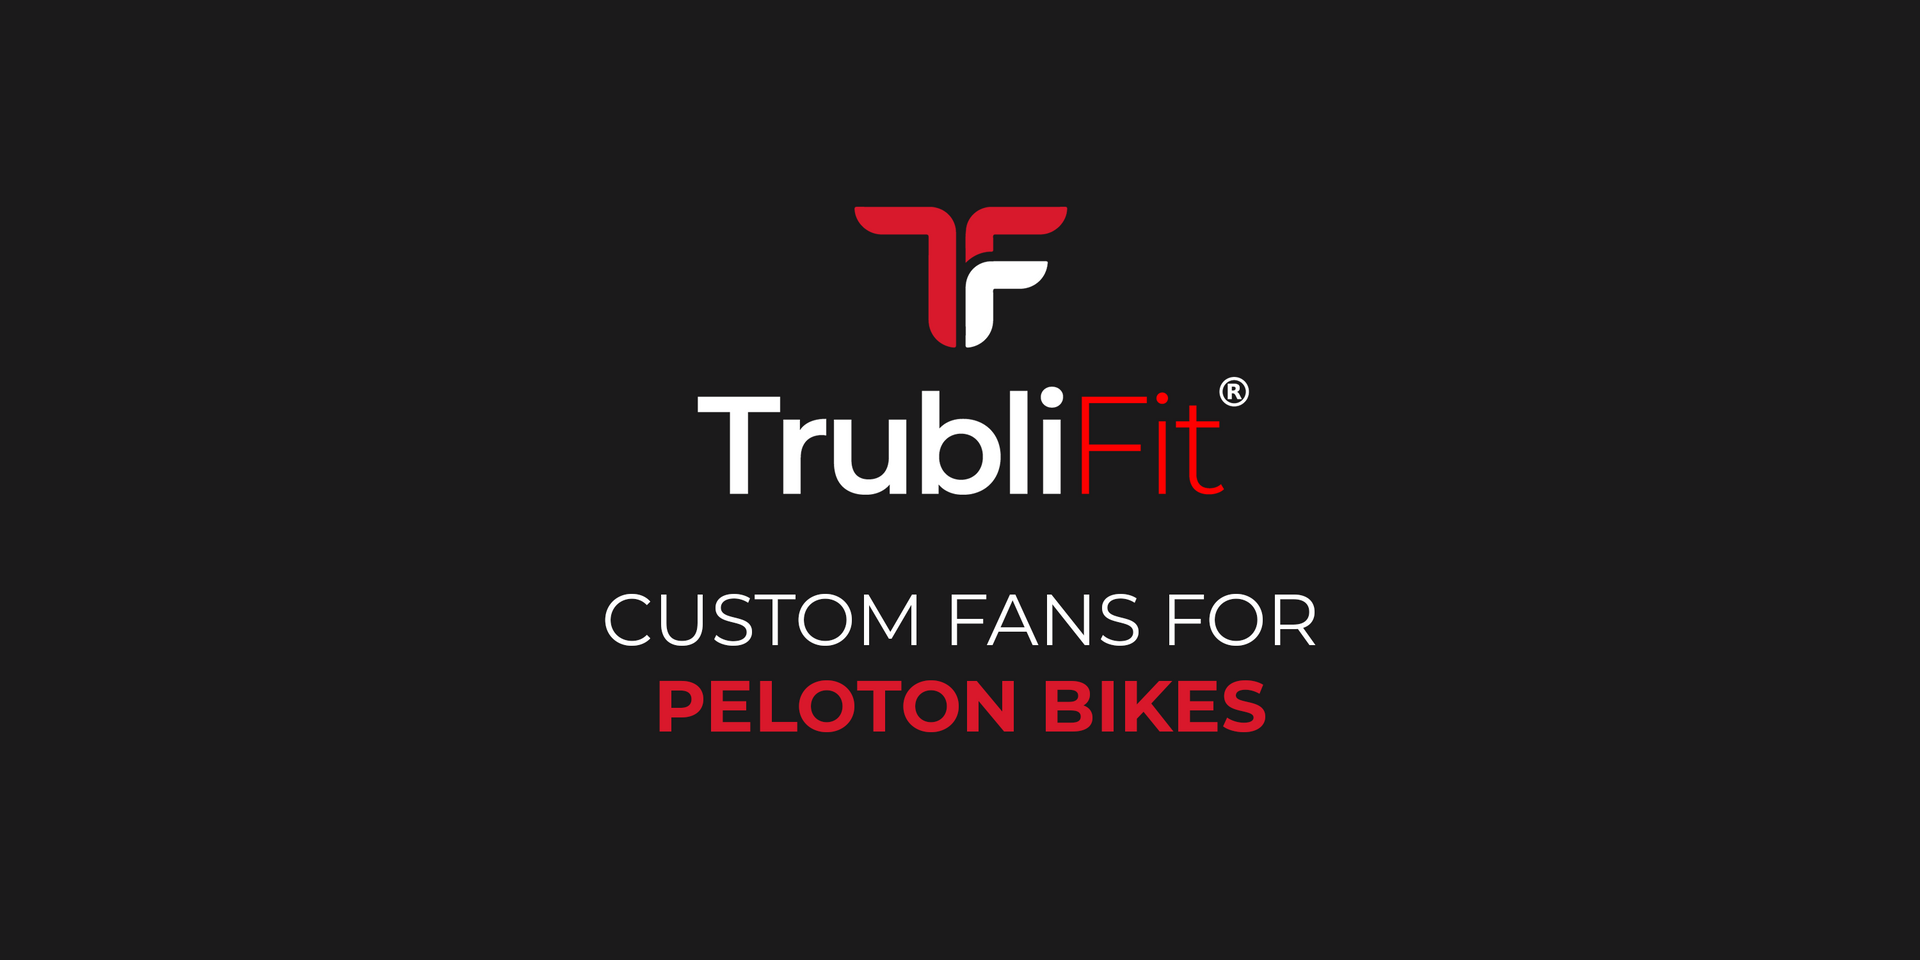 Load video: Fans for peloton bike